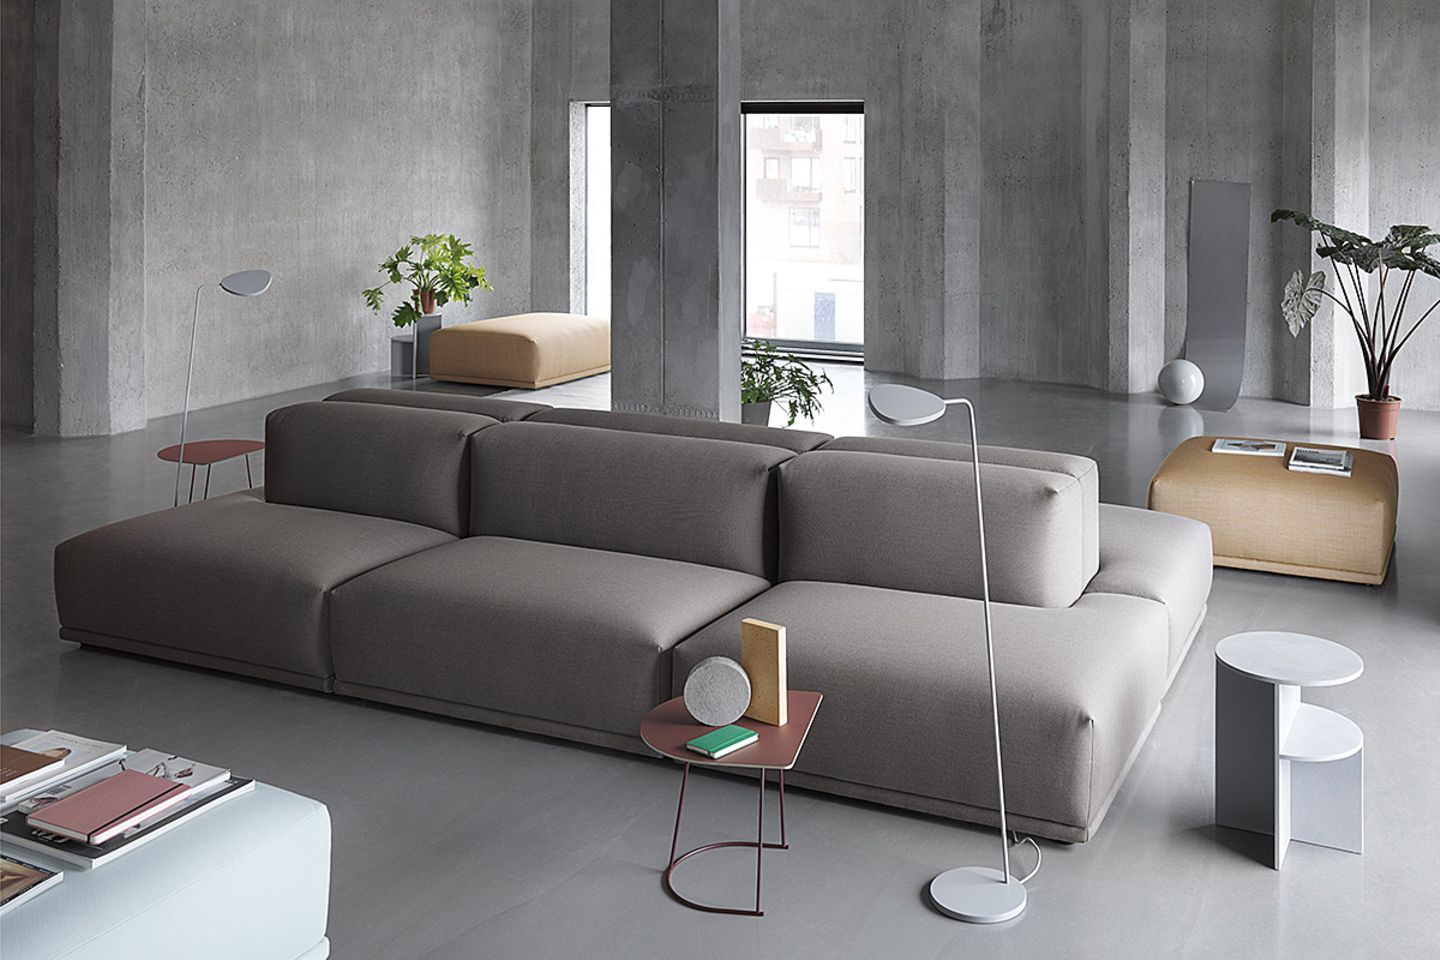 grau mit struktur im wohnzimmer - sichtbeton trifft graues sofa